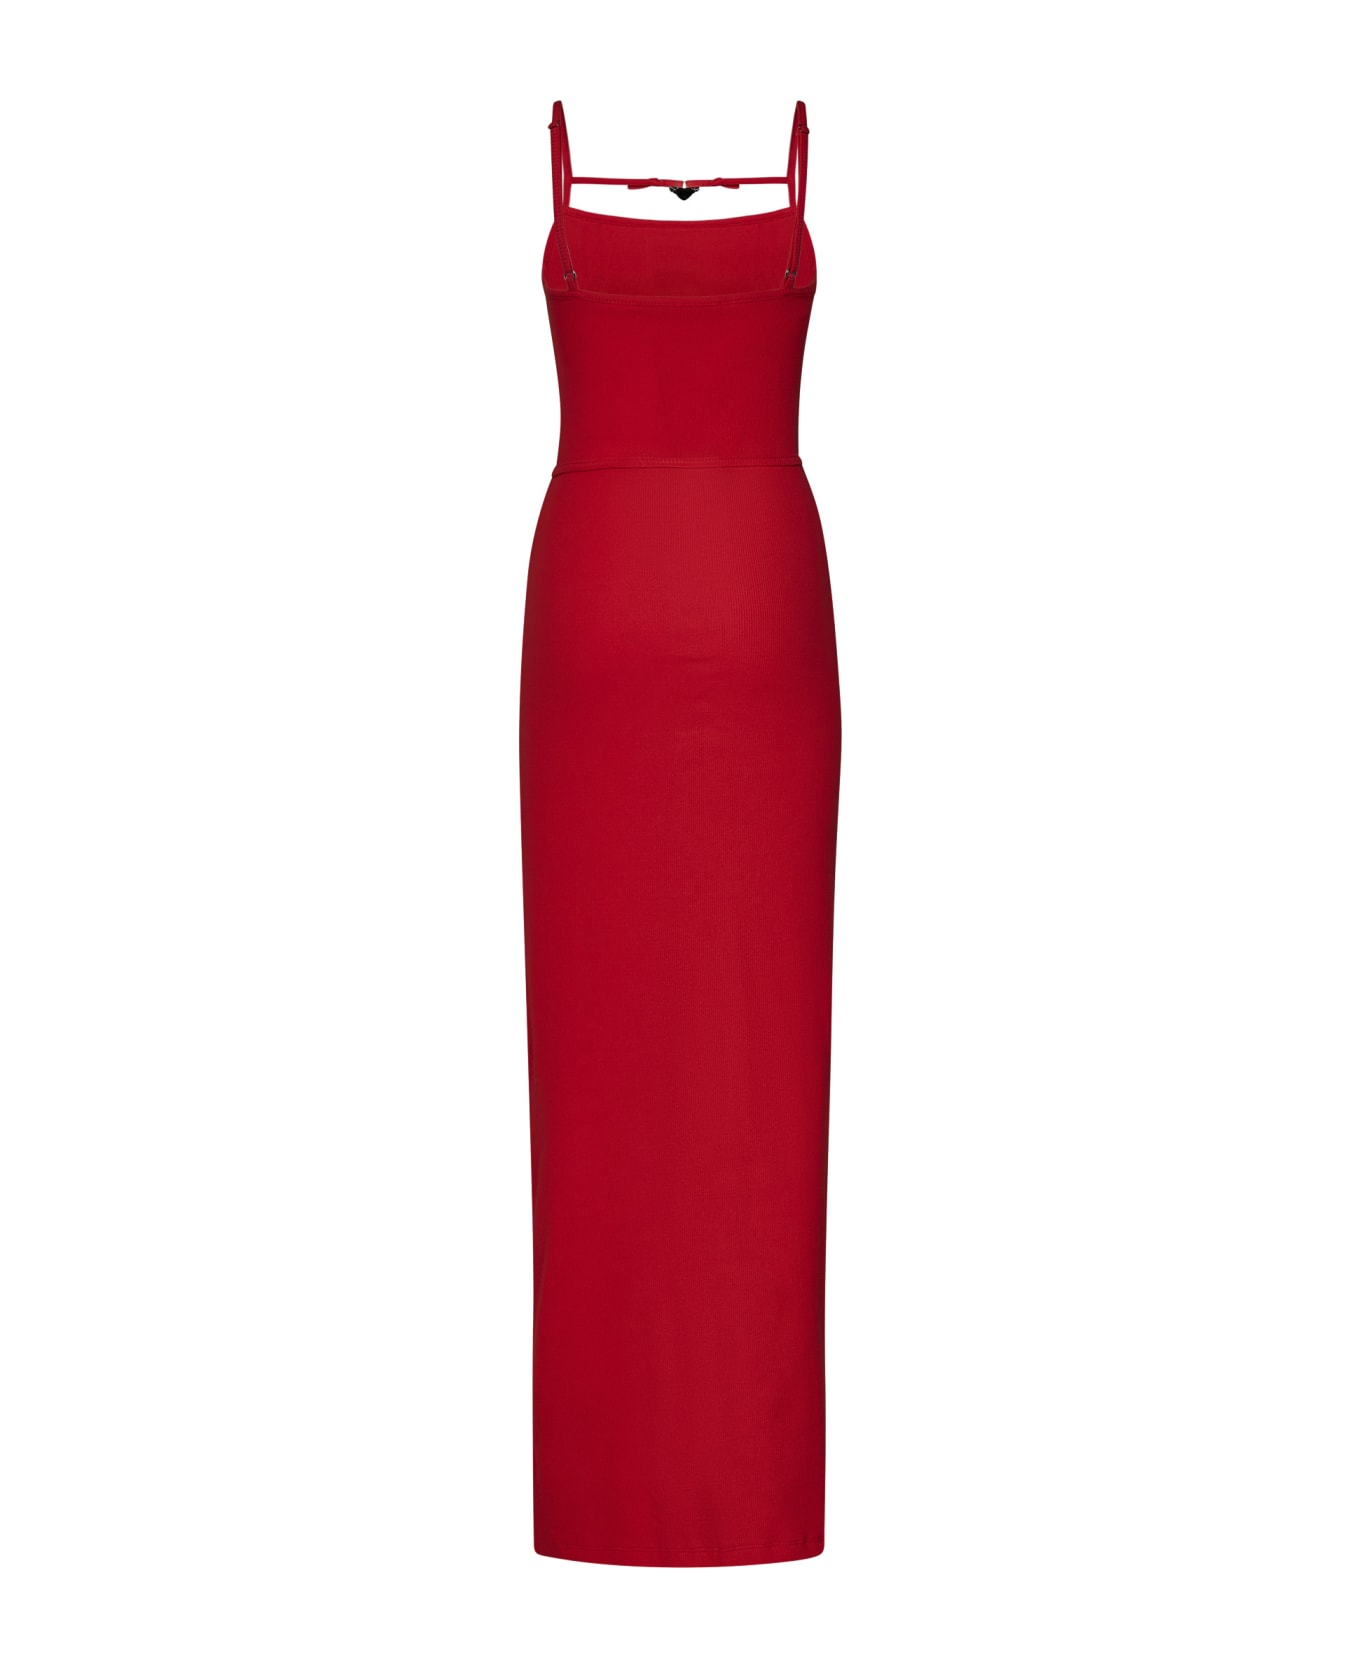 Ottolinger Dress - Red